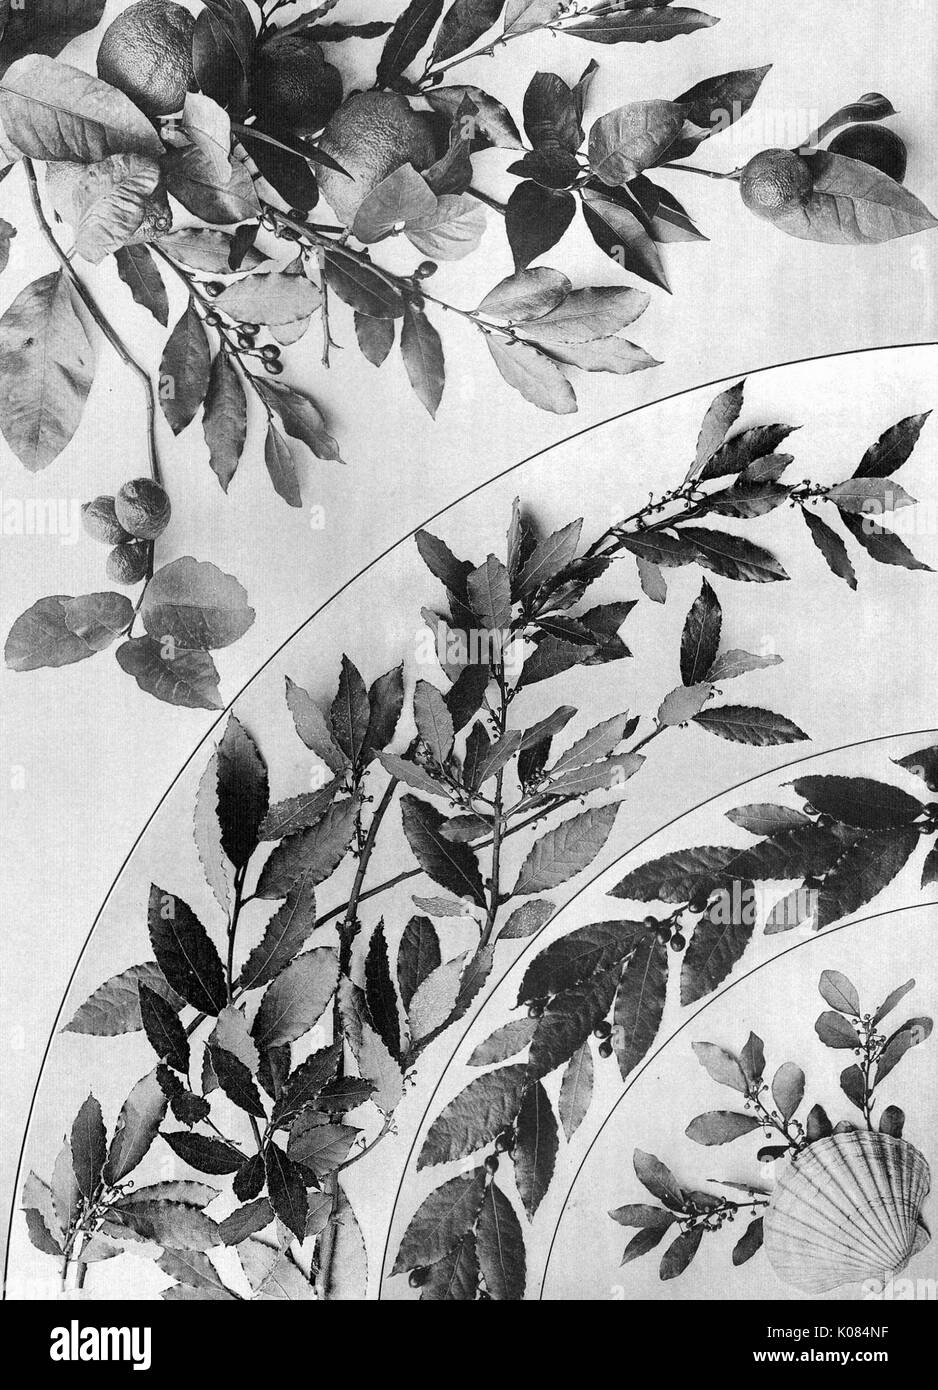 Girlanden und dekorative Gruppen von Martin Gerlach, Array der Blätter mit kleinen Beeren, Sea Shell auf der unteren rechten Ecke, 1900. Stockfoto